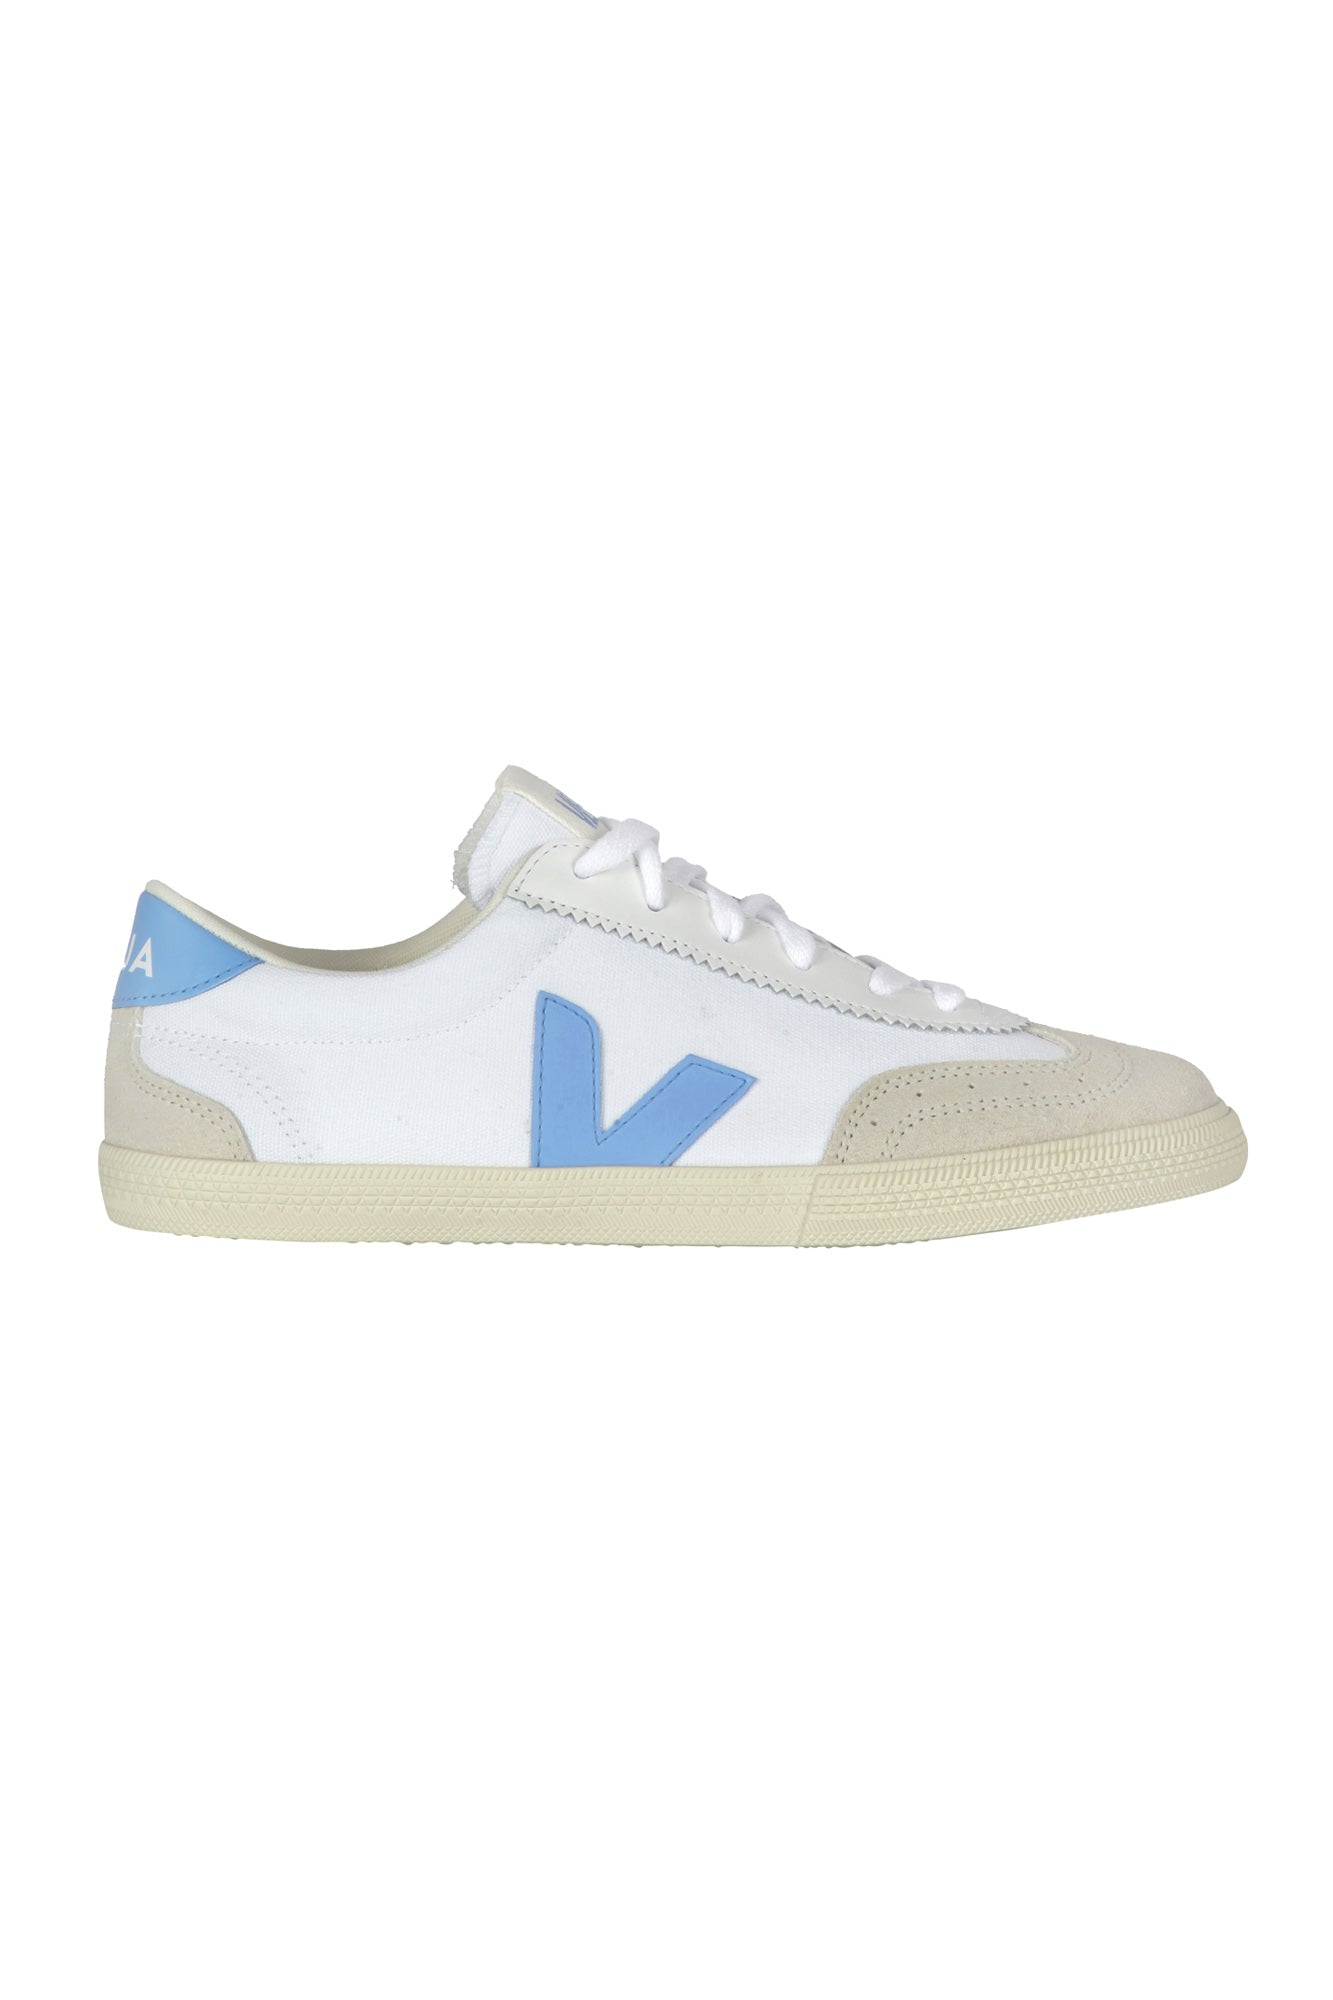 Veja - Sneakers - 430603 - Bianco/Azzurro